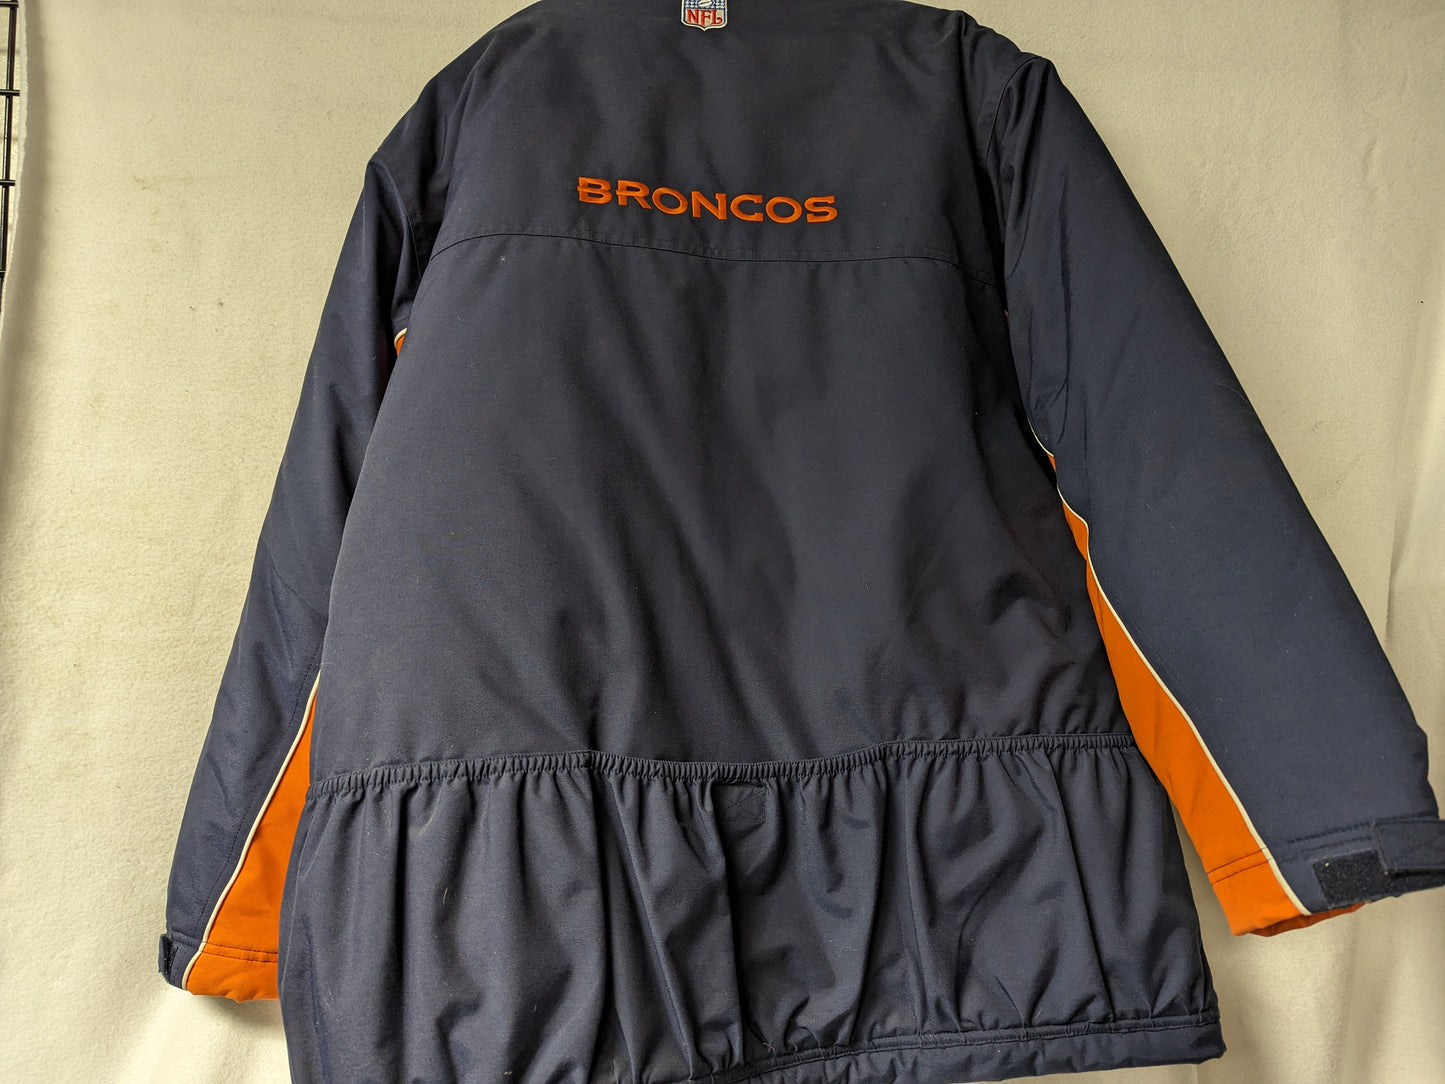 Denver Broncos NFL Winter Jacket Coat Size Large Color Blue Condition Used